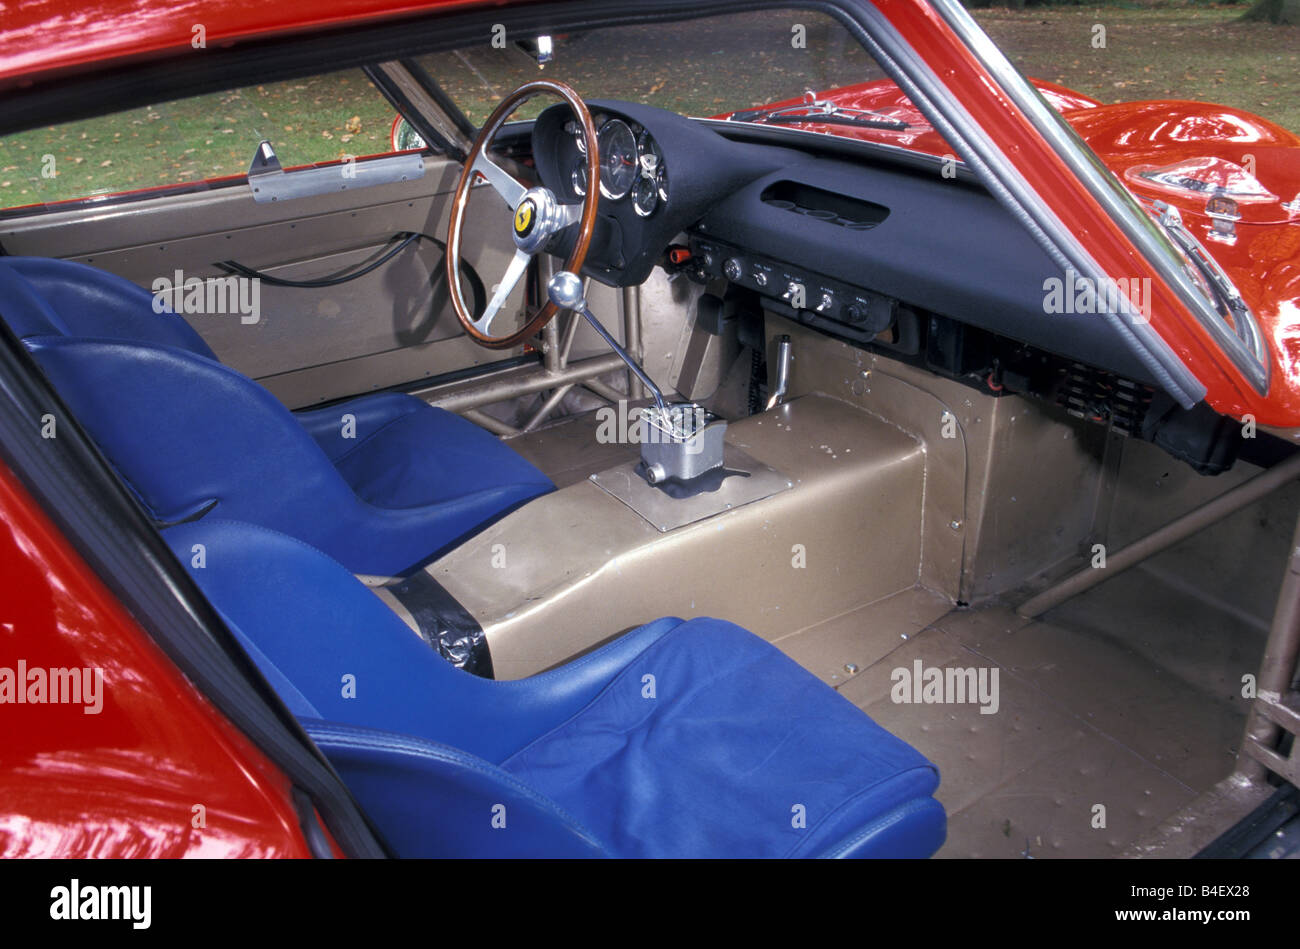 Car Ferrari 250 Gto Model Year 1962 1964 1960s Sixties